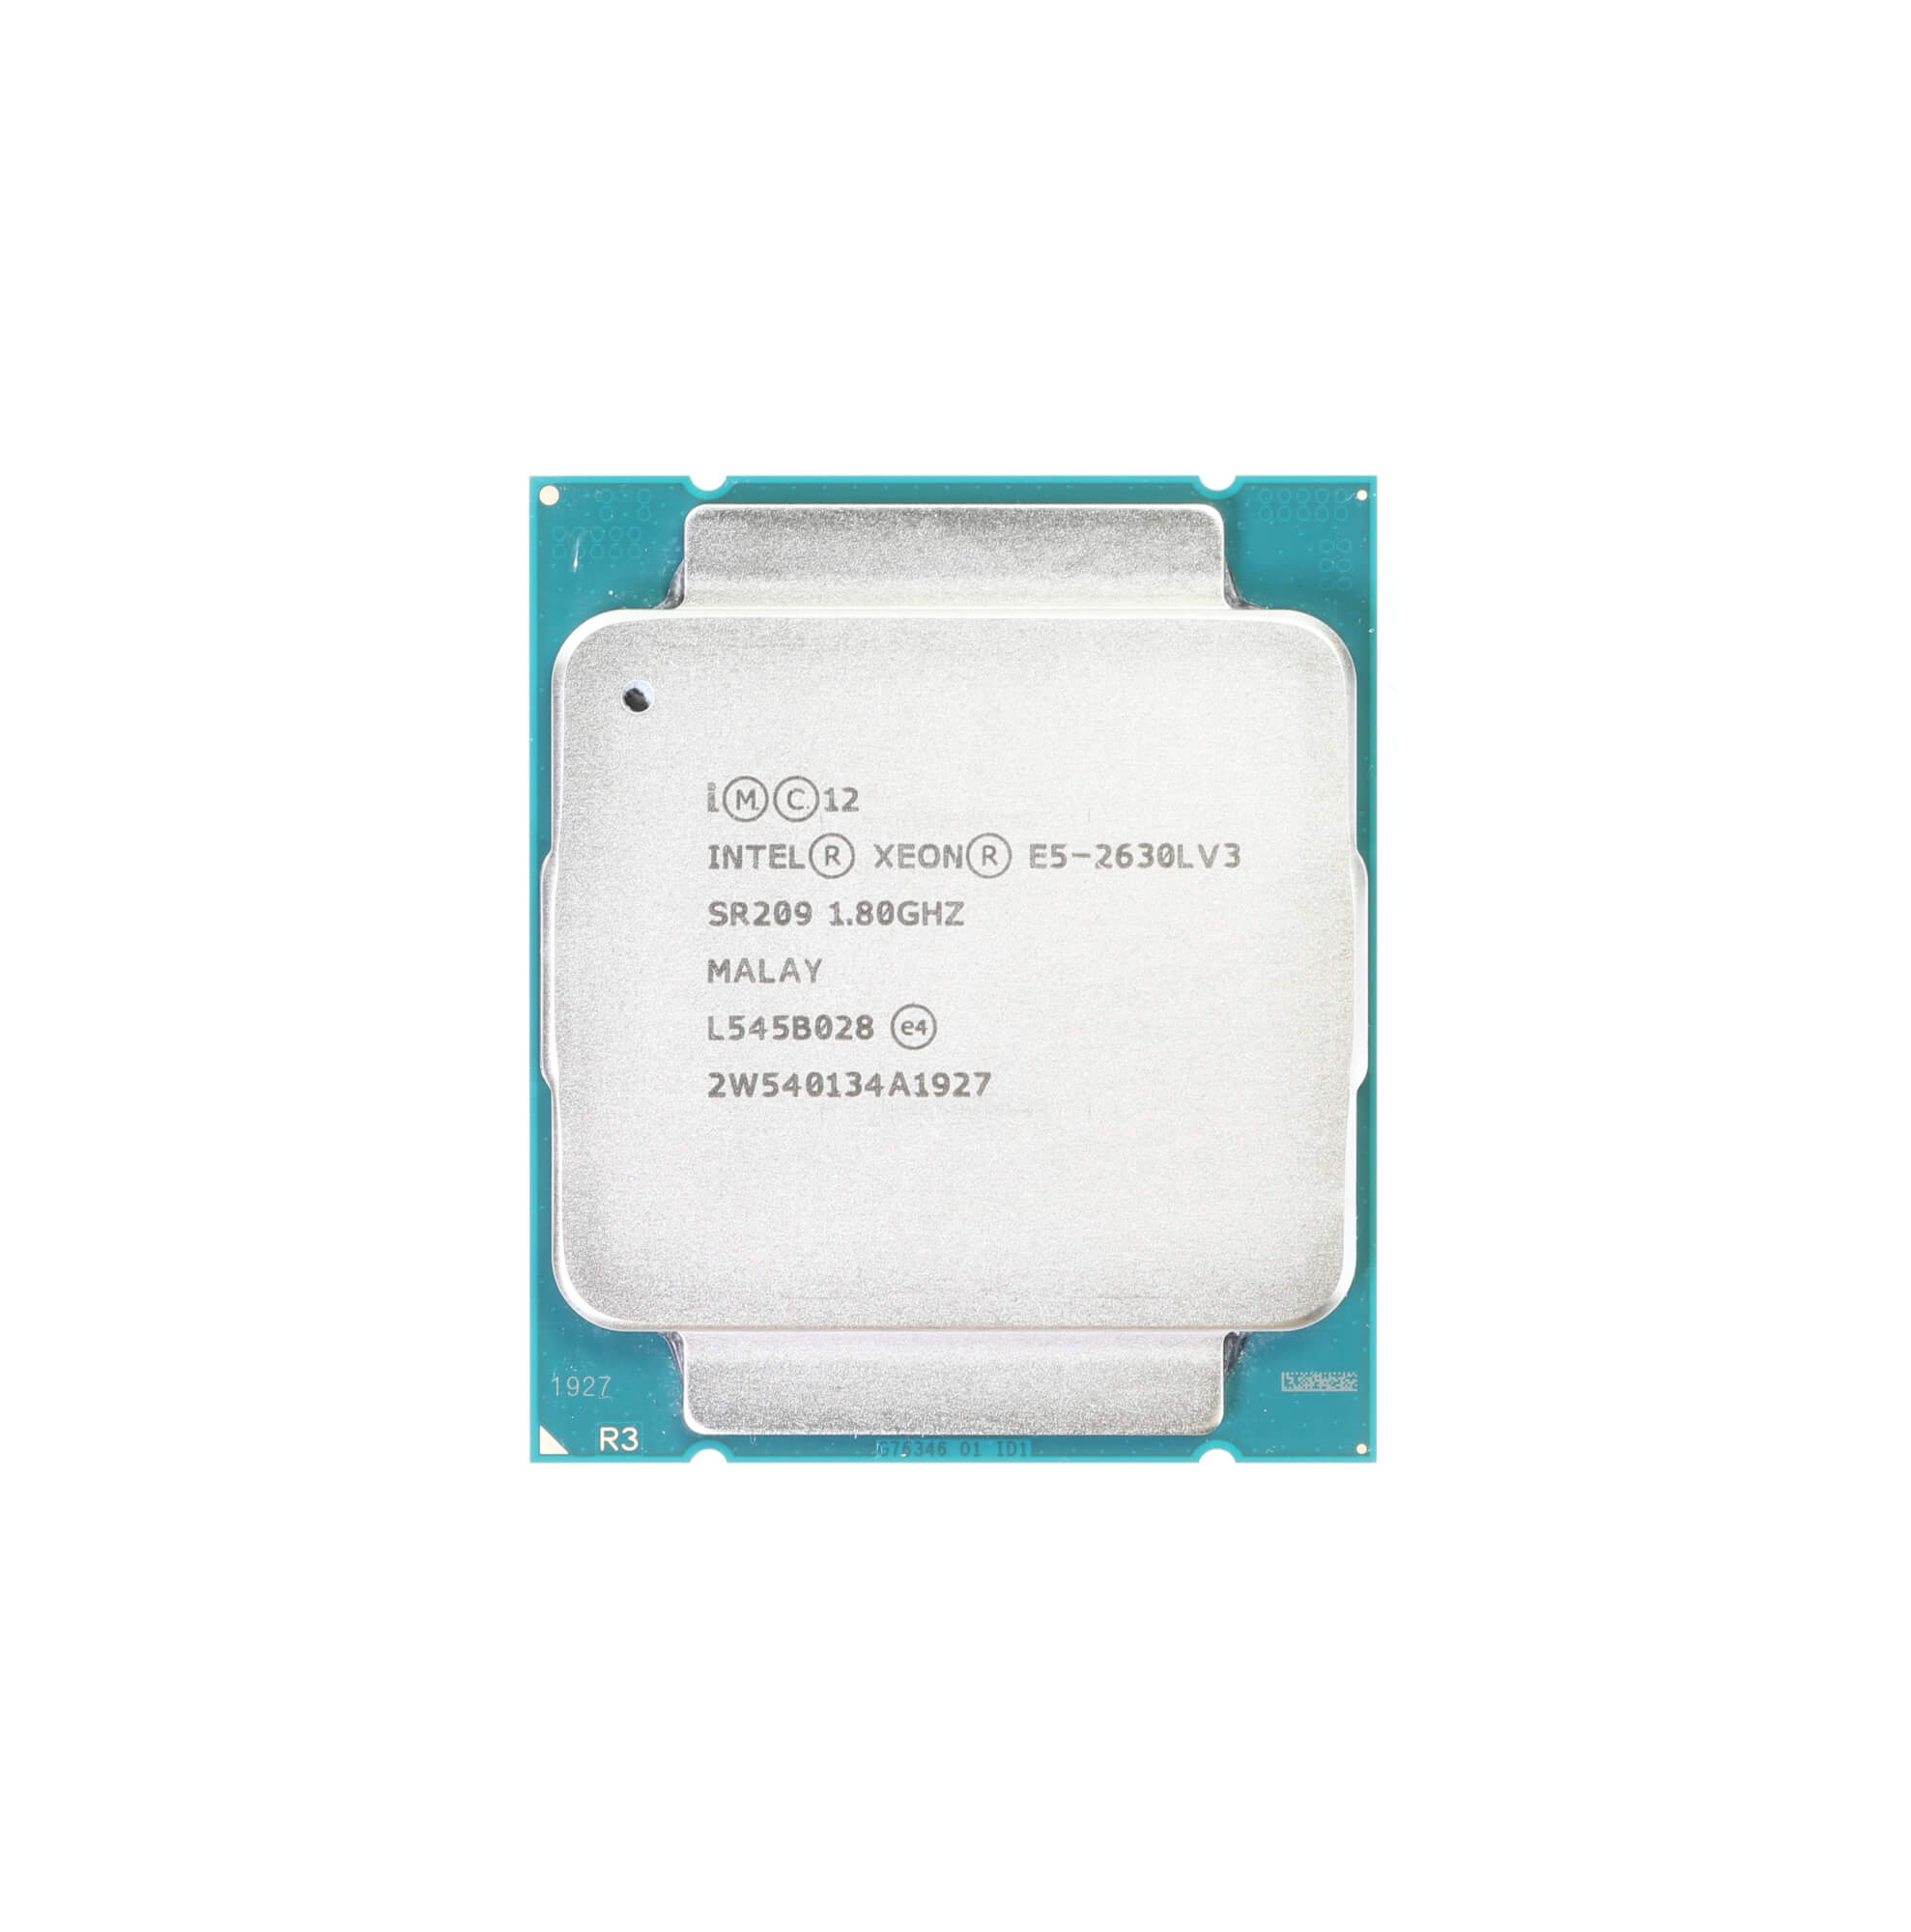 Intel Xeon E5-2630L V3 CPU Processor 8 Core 1.80GHz 20MB L3 Cache 55W SR209